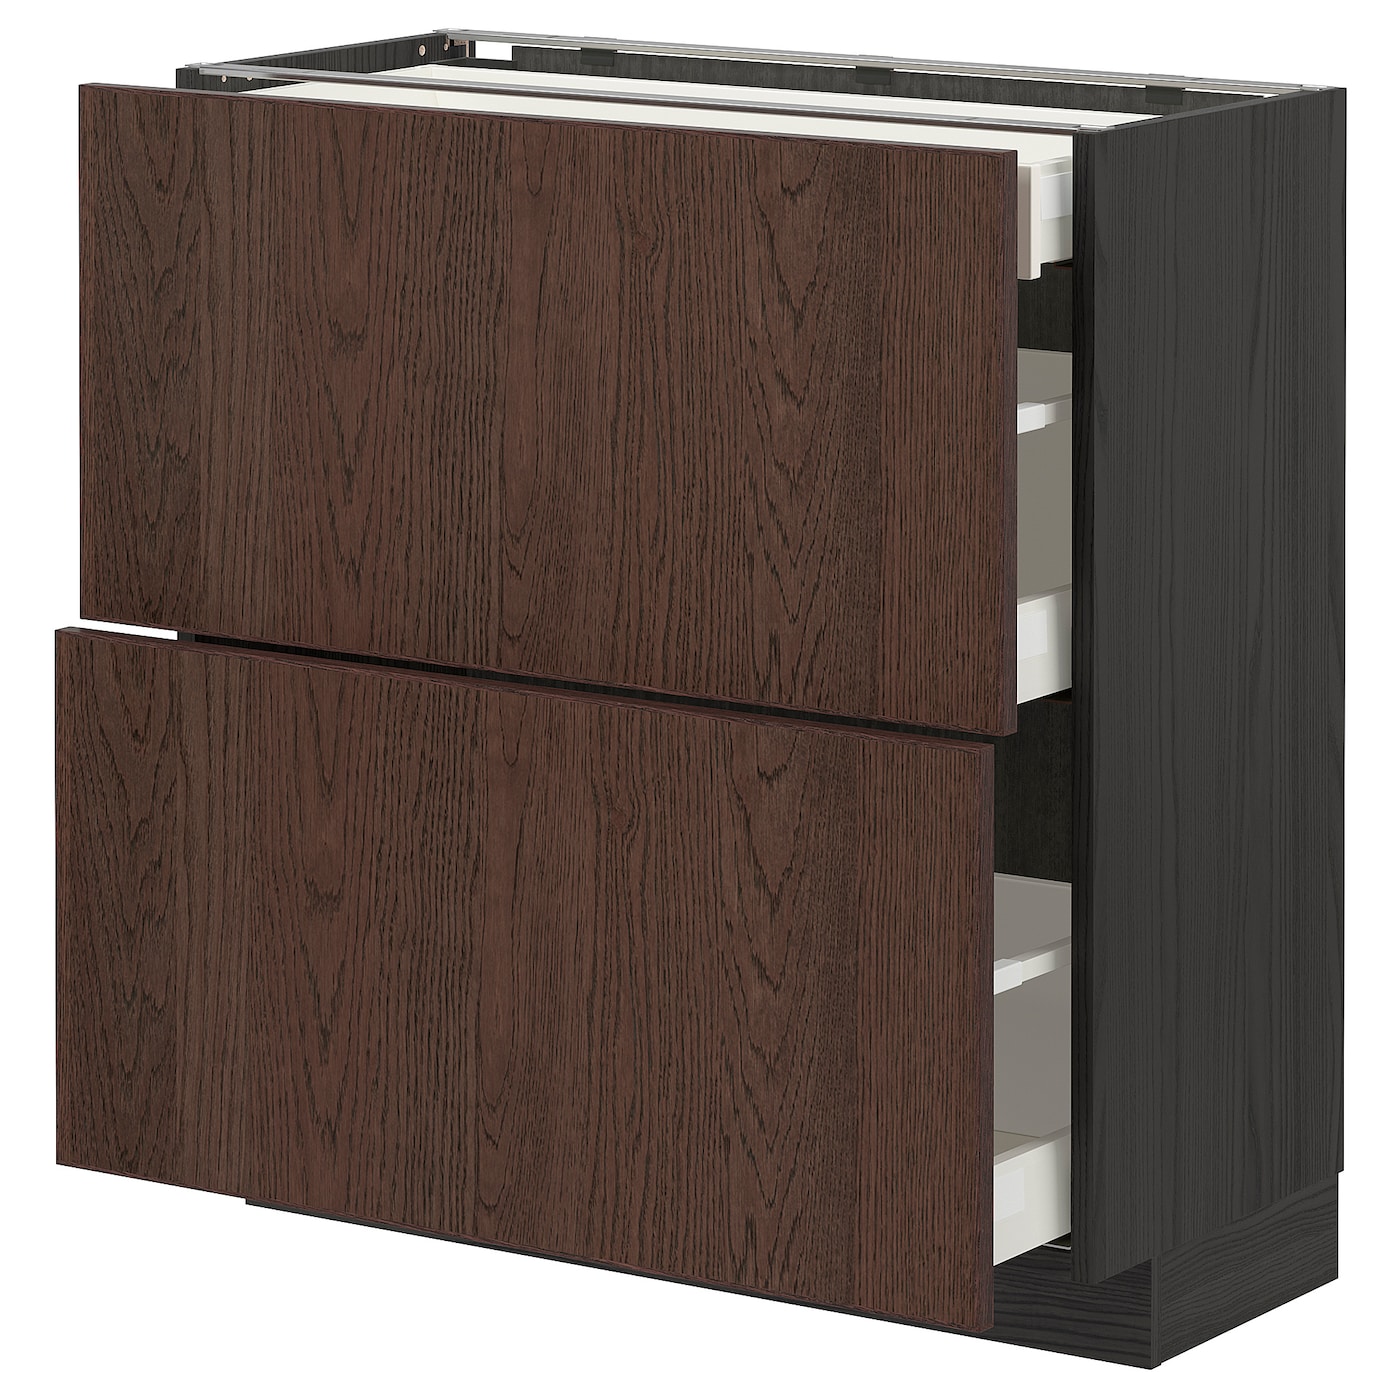 Напольный кухонный шкаф  - IKEA METOD MAXIMERA, 88x39,2x80см, черный/коричневый, МЕТОД МАКСИМЕРА ИКЕА